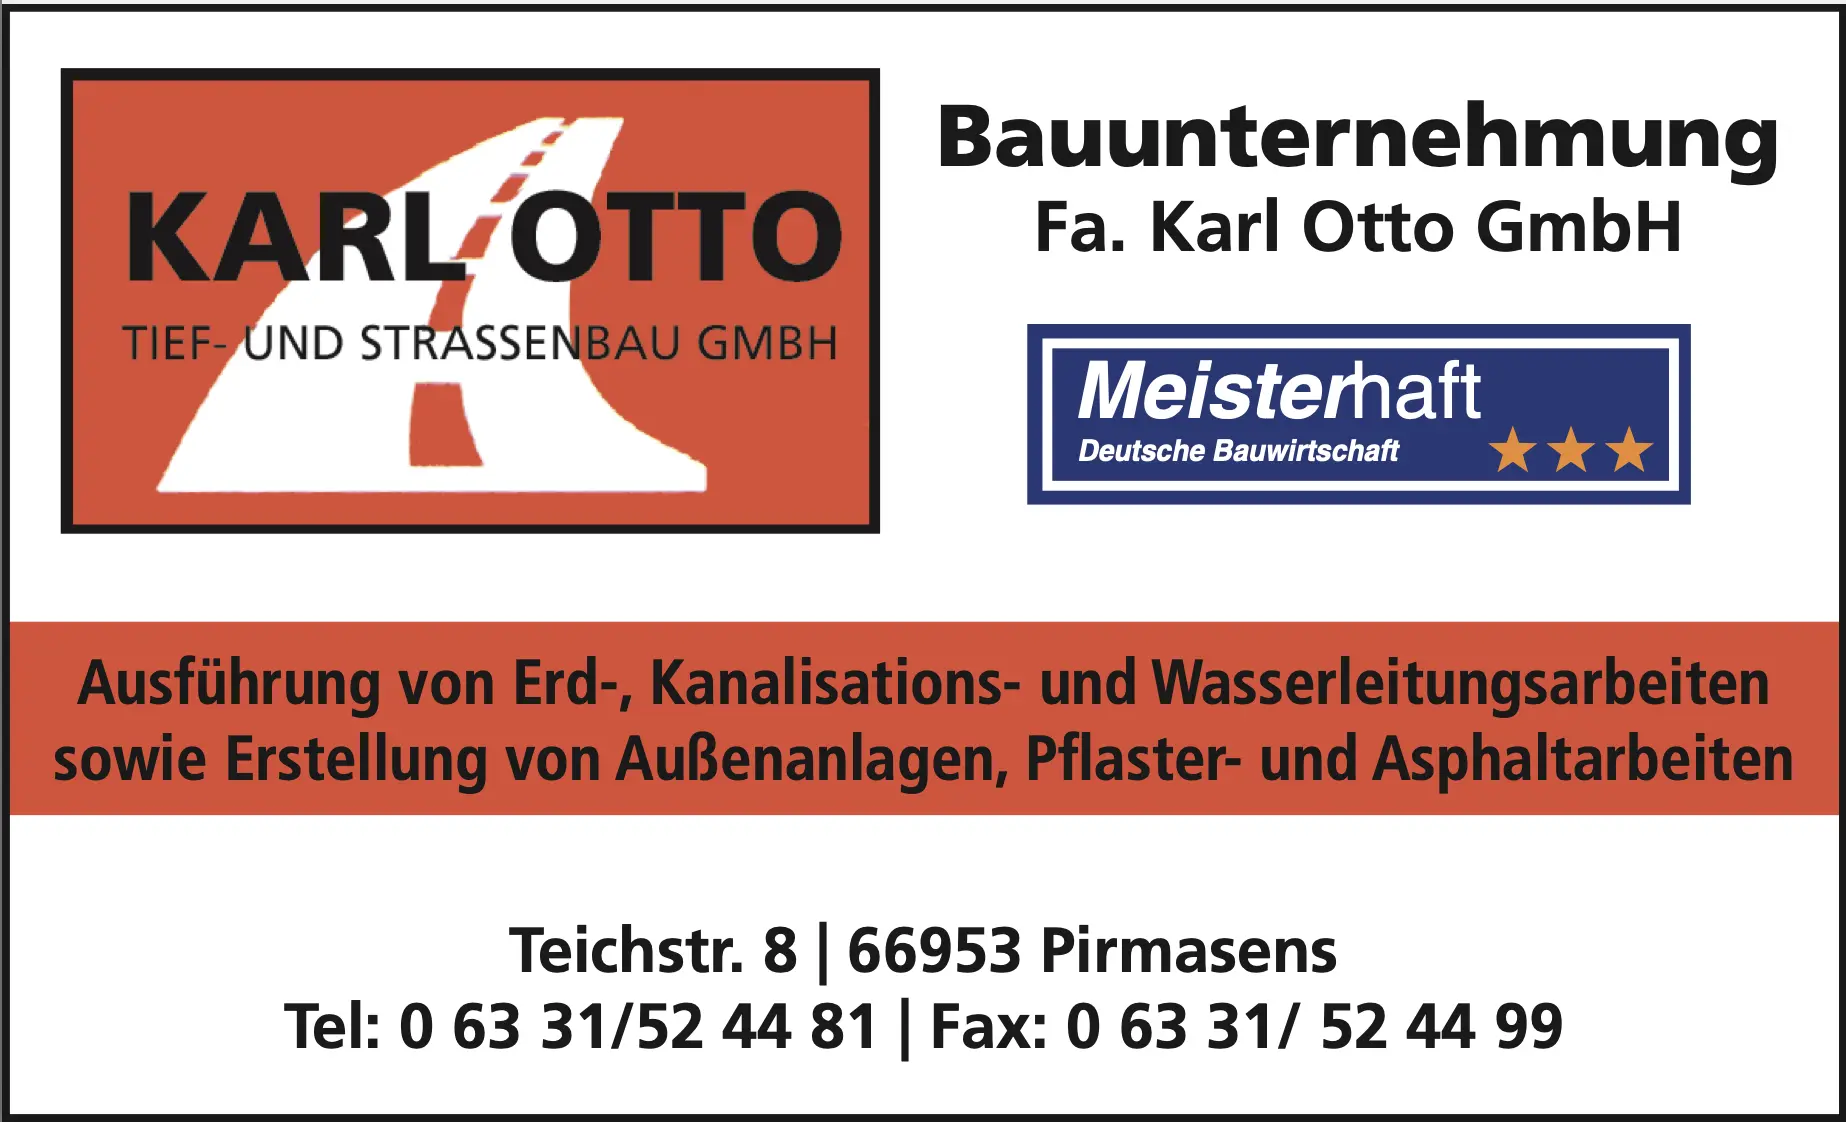 Karl Otto Schild + Meisterhaft logo